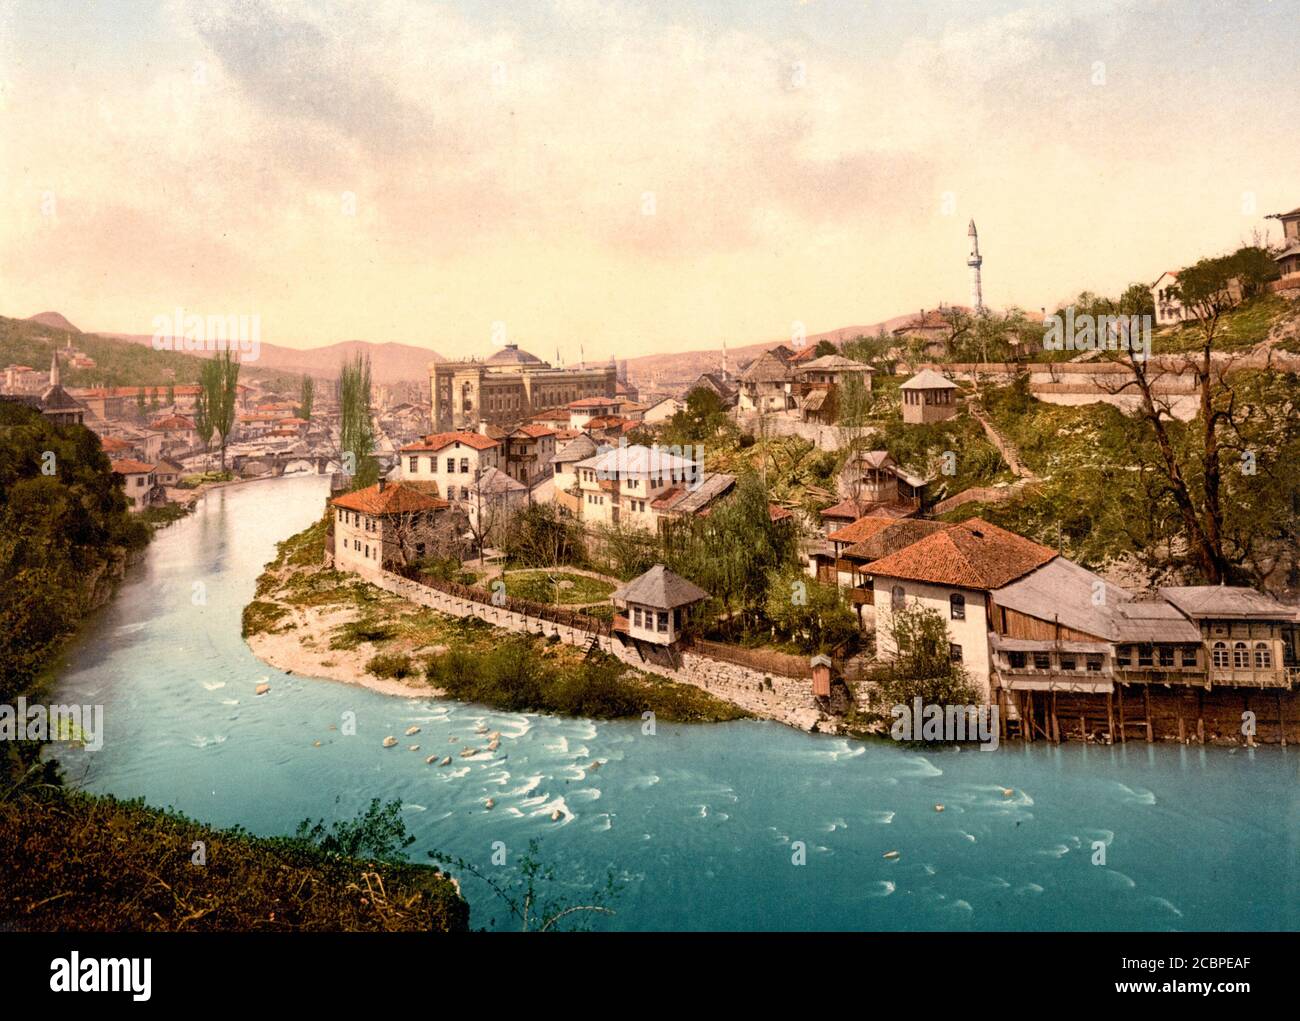 Sarajevo, Bendbasi, Bosnien, Österreich-Ungarn, um 1900 Stockfoto